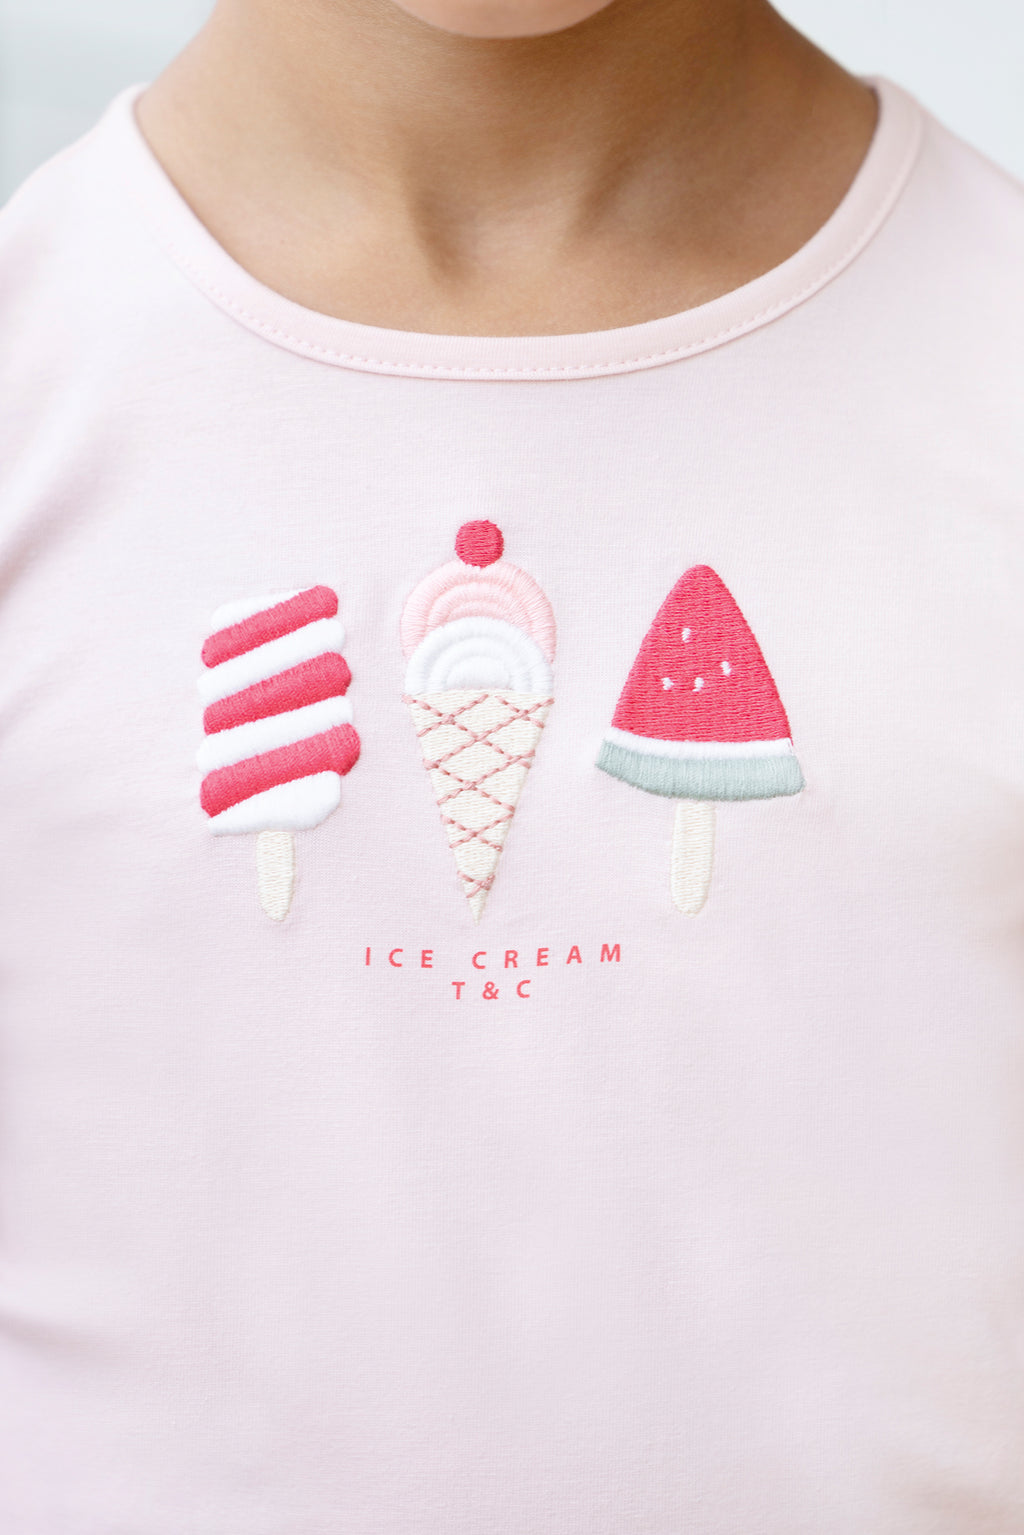 Maglietta - Rosa pallido Illustrazione gelato